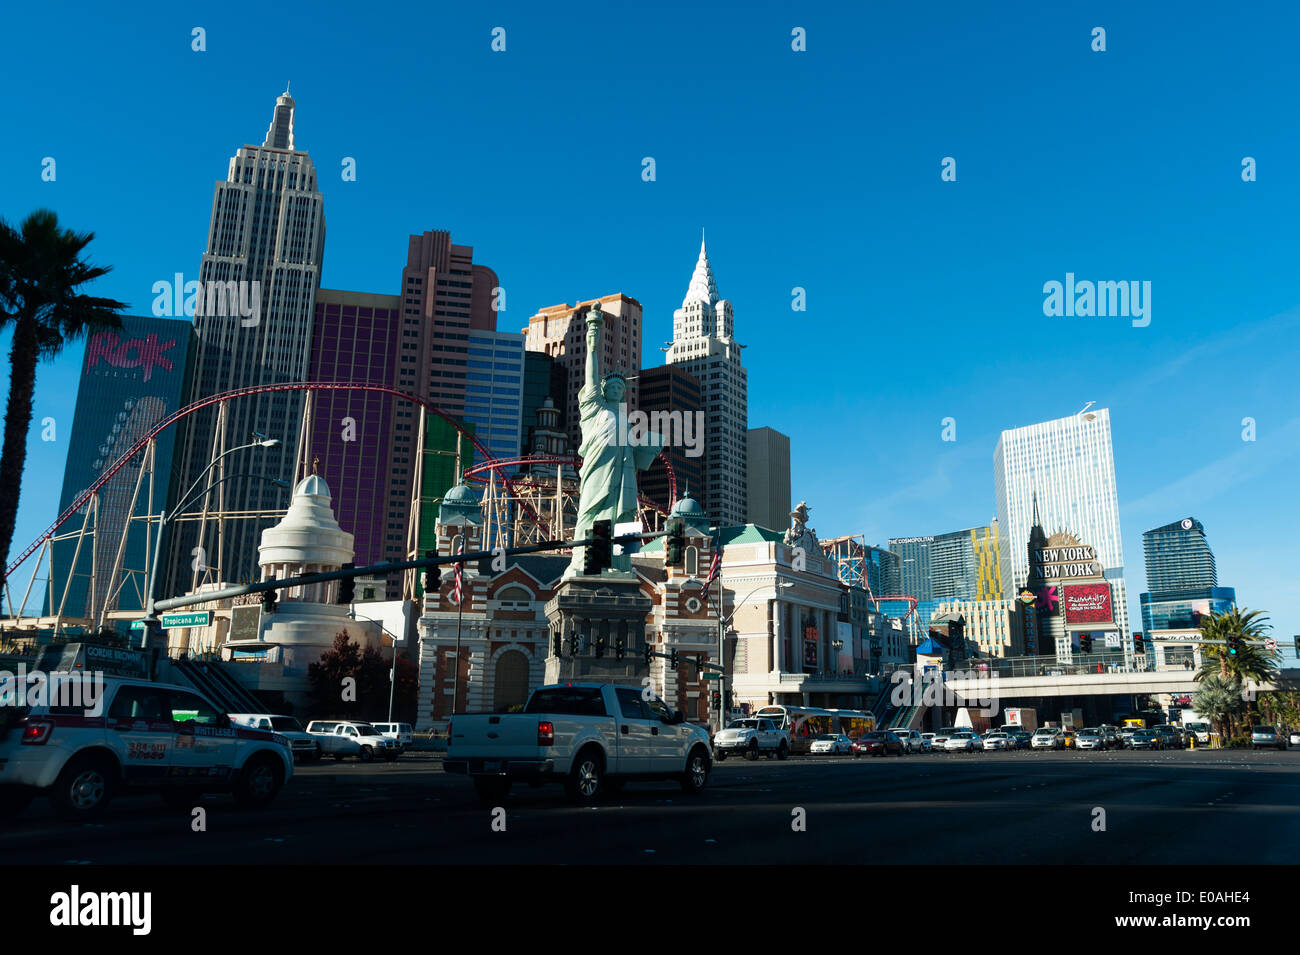 New York-New York Hotel and Casin, Las Vegas Strip, Las Vegas, Nevada, USA. Stock Photo